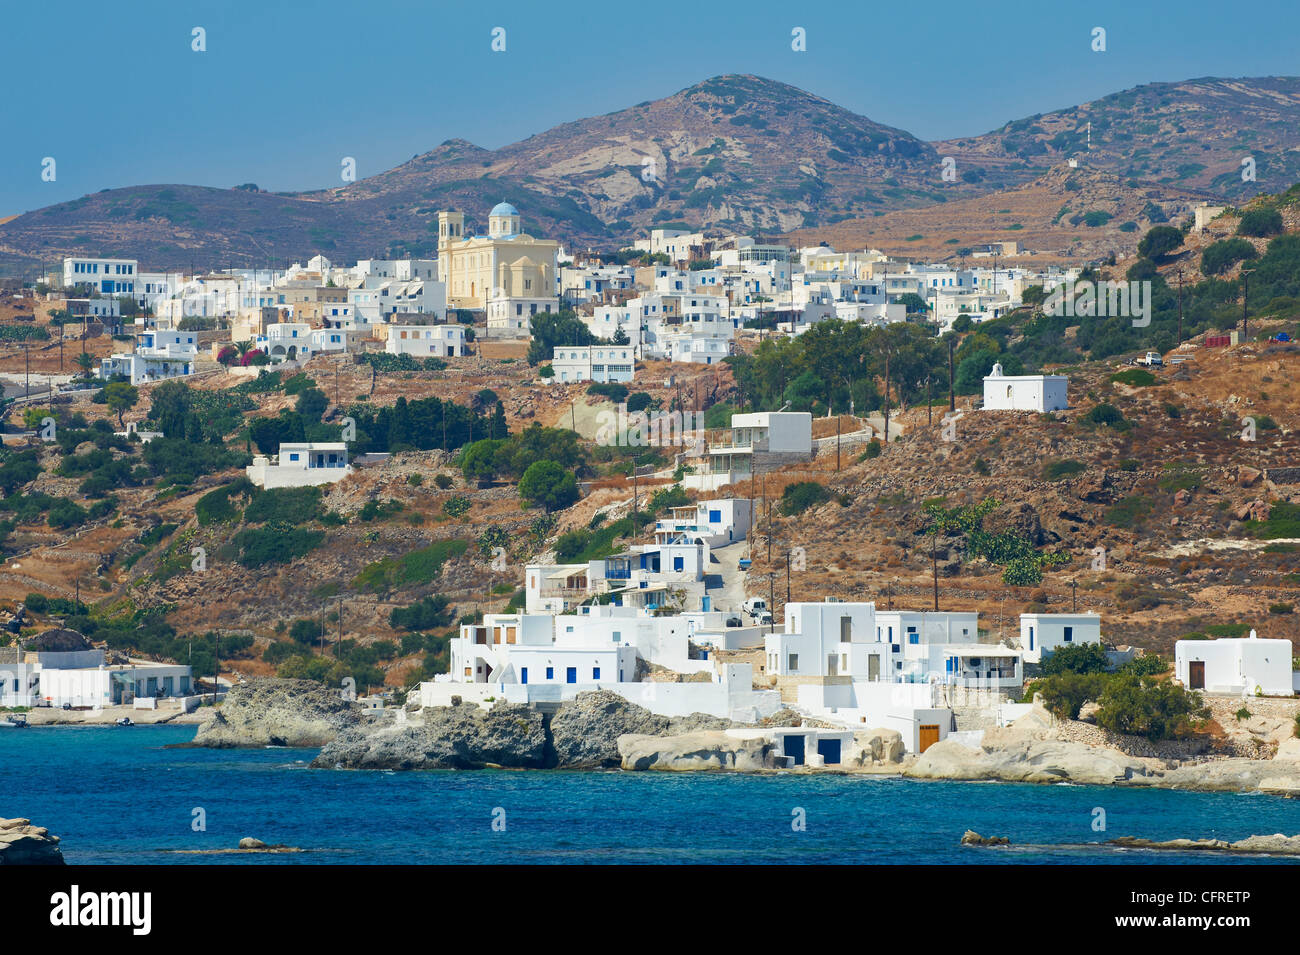 Stavros, Donoussa, kleinere Kykladen, Kykladen-Inseln, griechische Inseln, Ägäis, Griechenland, Europa Stockfoto